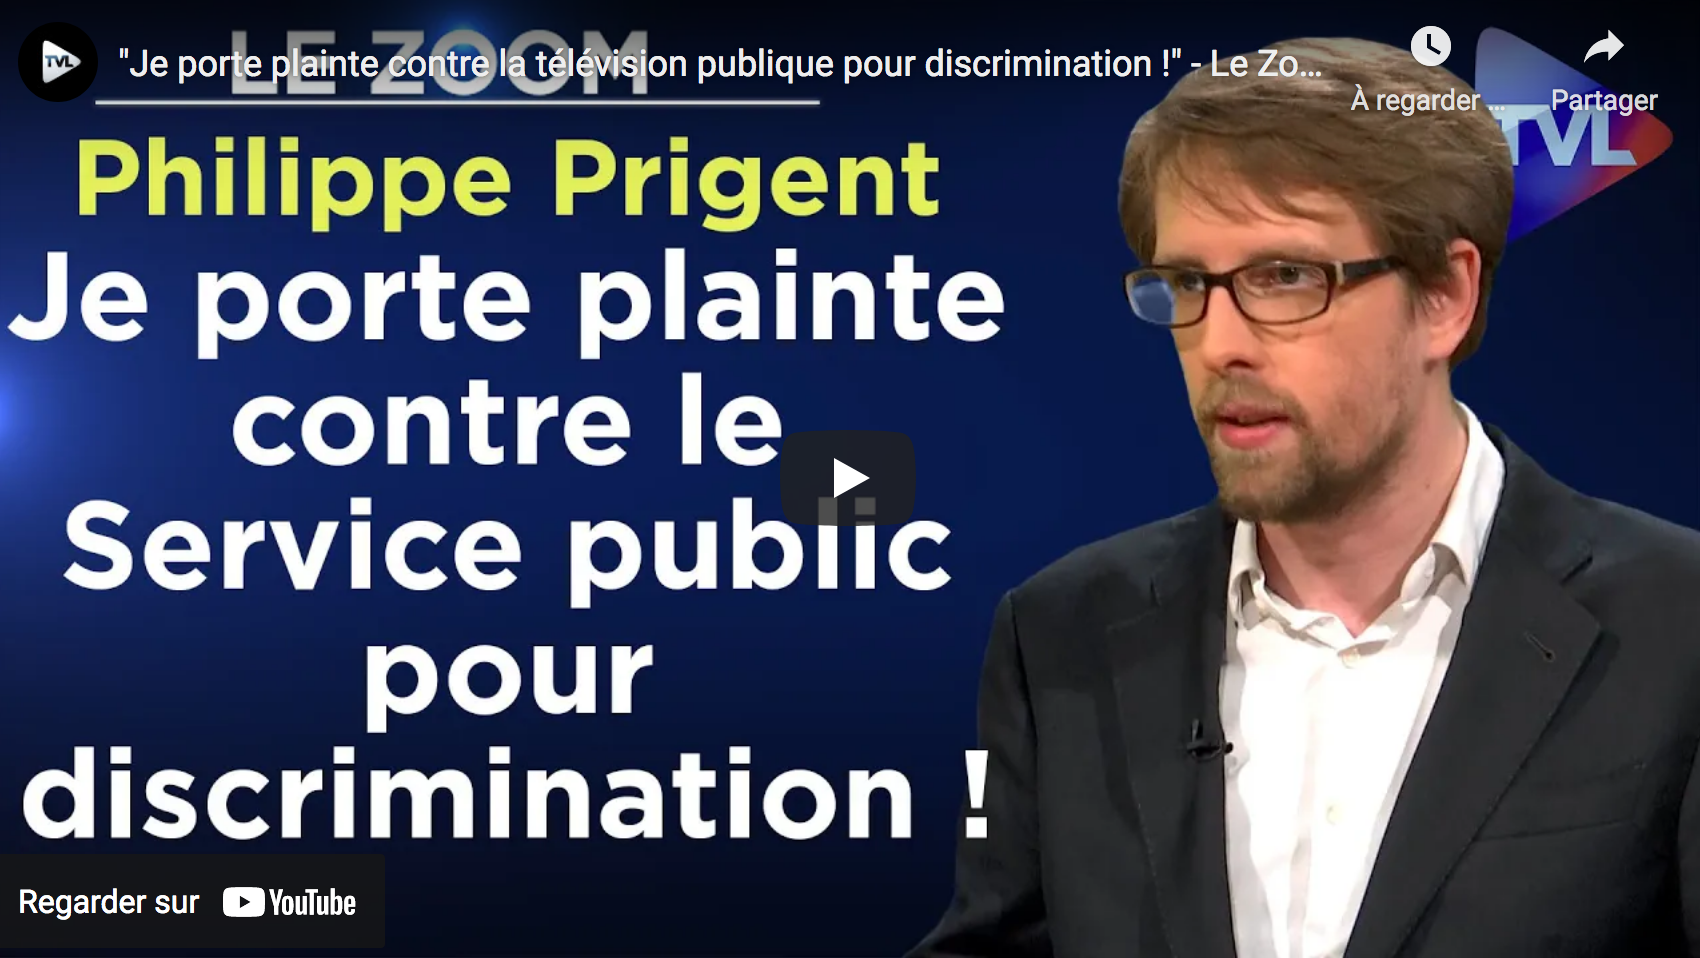 Me Philippe Prigent : “Je porte plainte contre la télévision publique pour discrimination !” (VIDÉO)